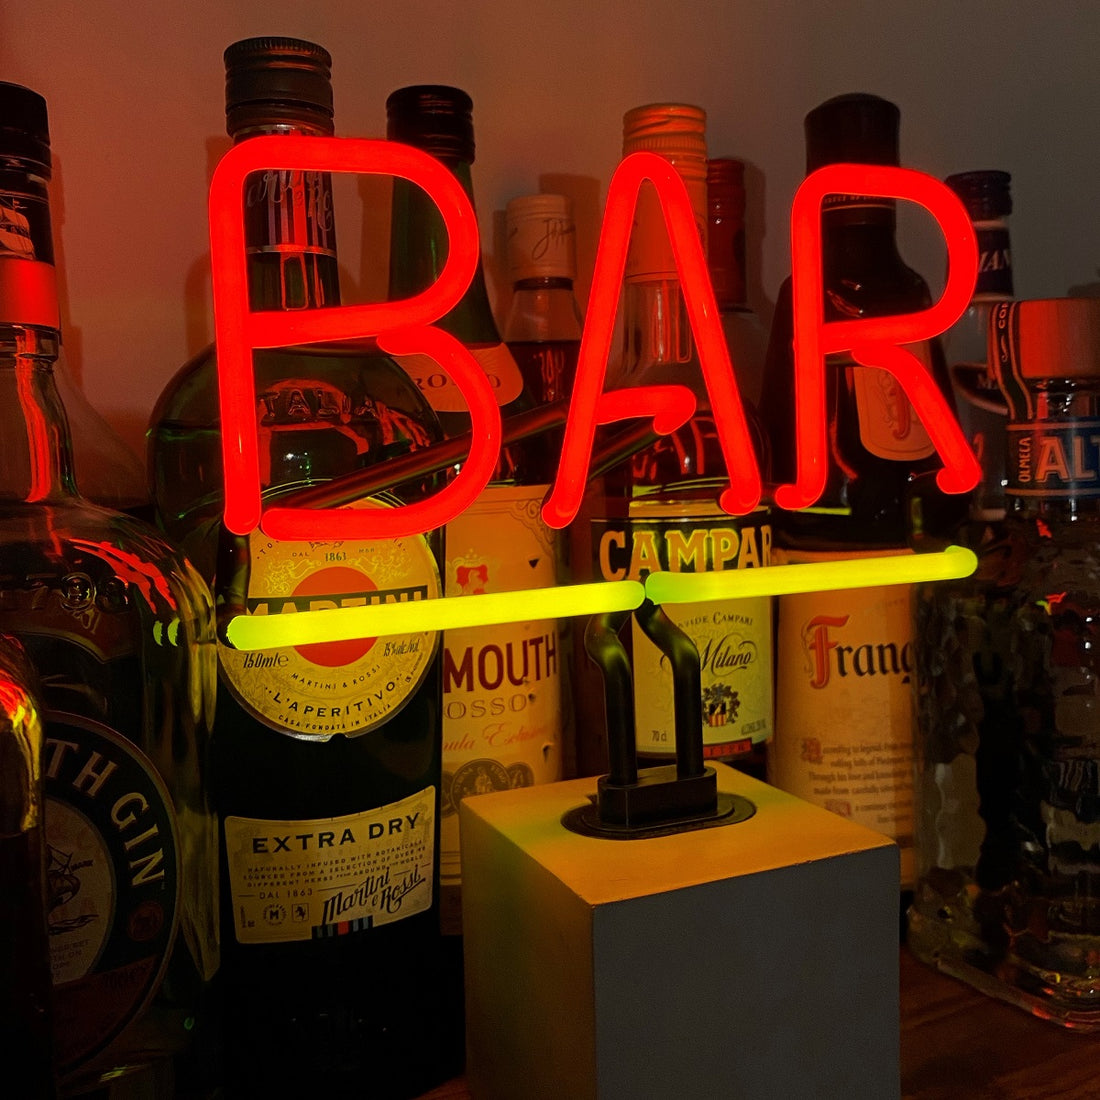 "Bar" en néon avec base en béton  